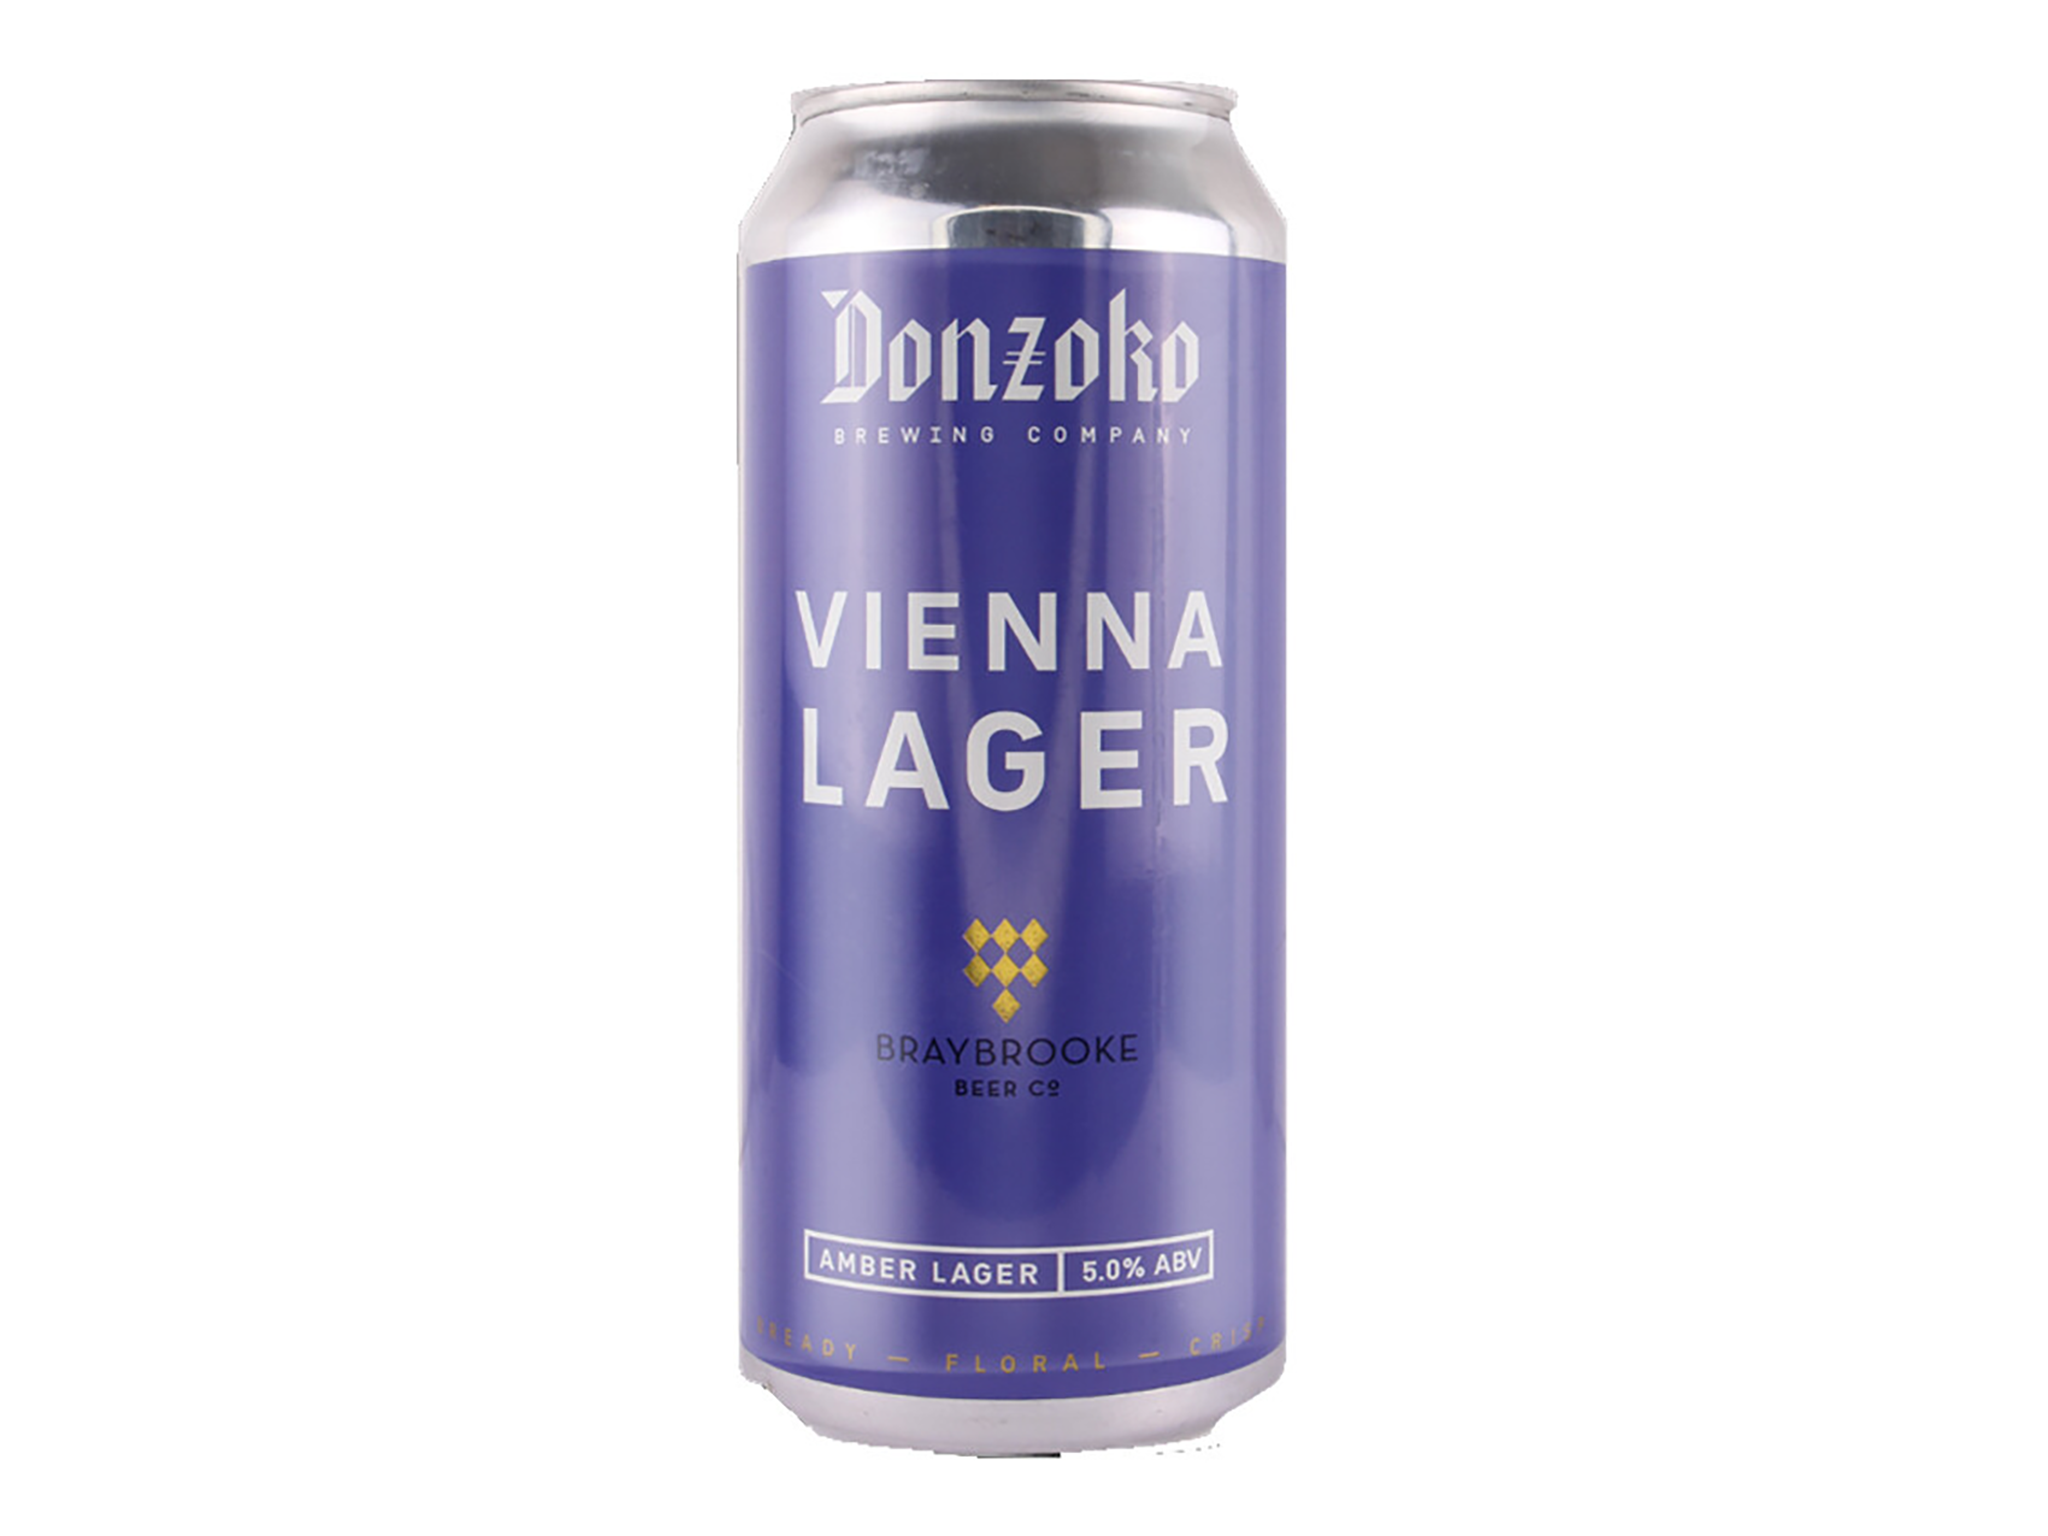 Donzoko Vienna lager